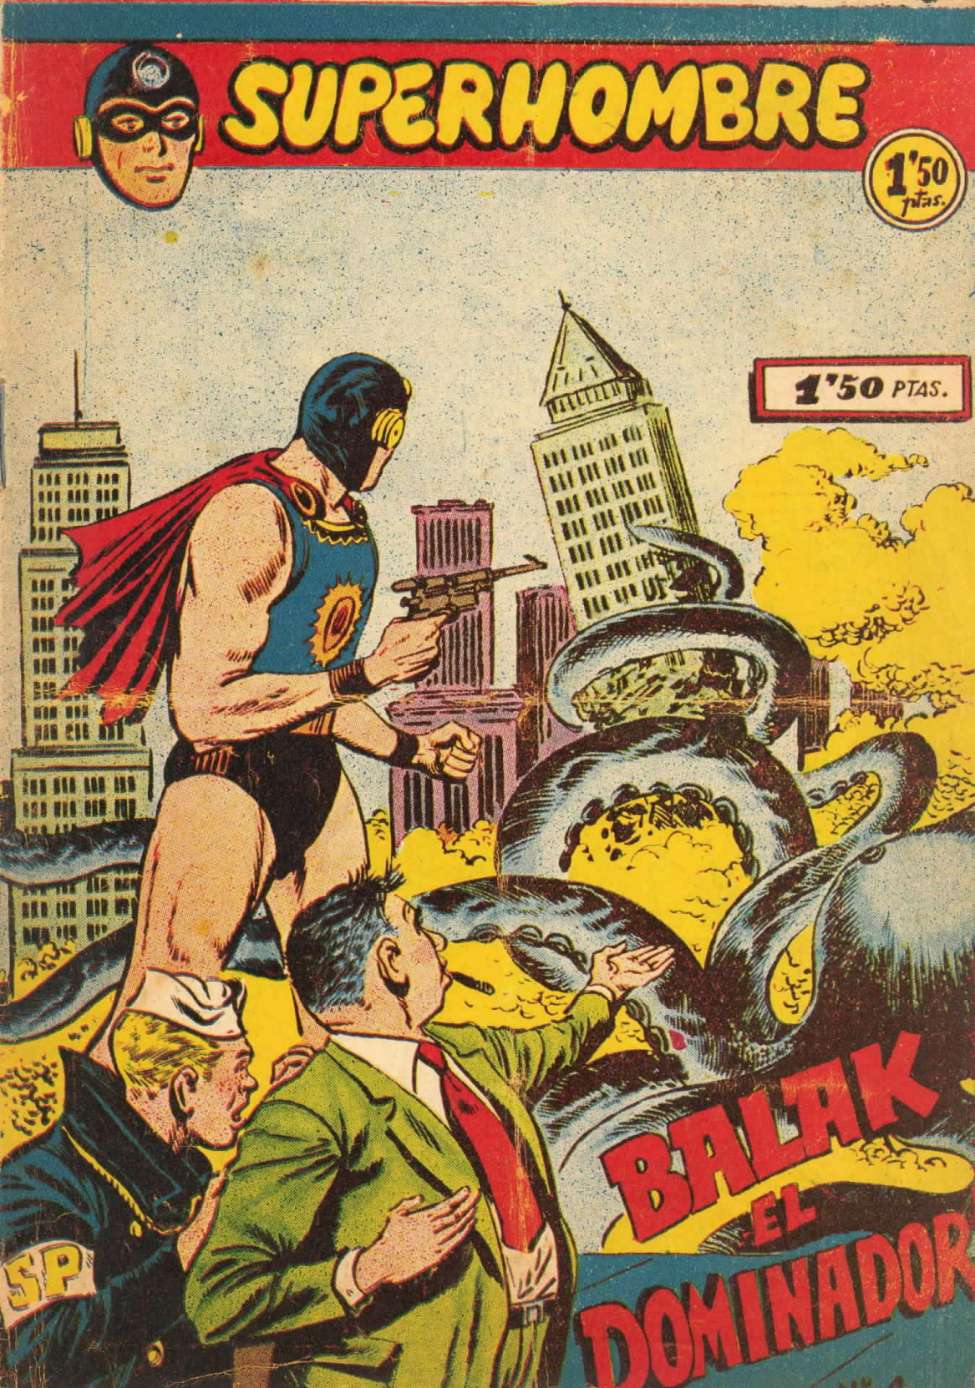 Book Cover For Superhombre 4 Balak el Dominador